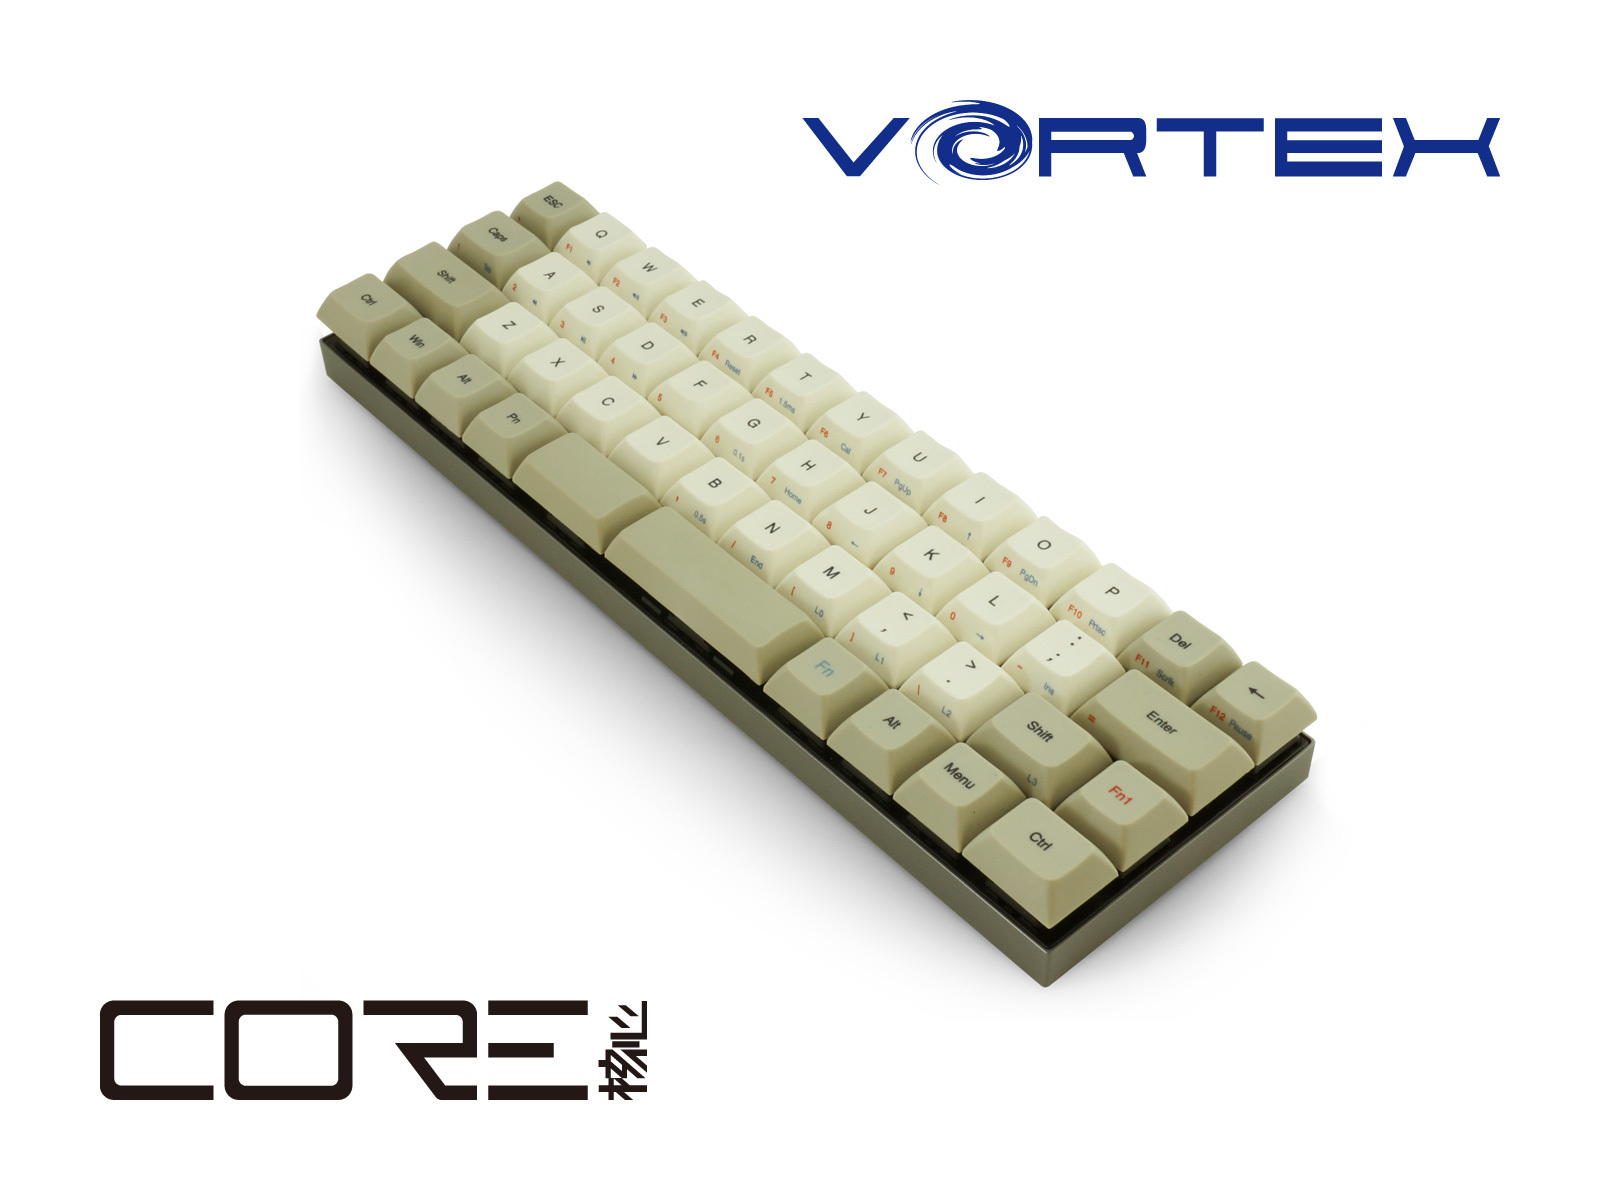 究極のミニマルデザイン40％メカニカルキーボード「Vortex CORE 47keys ...